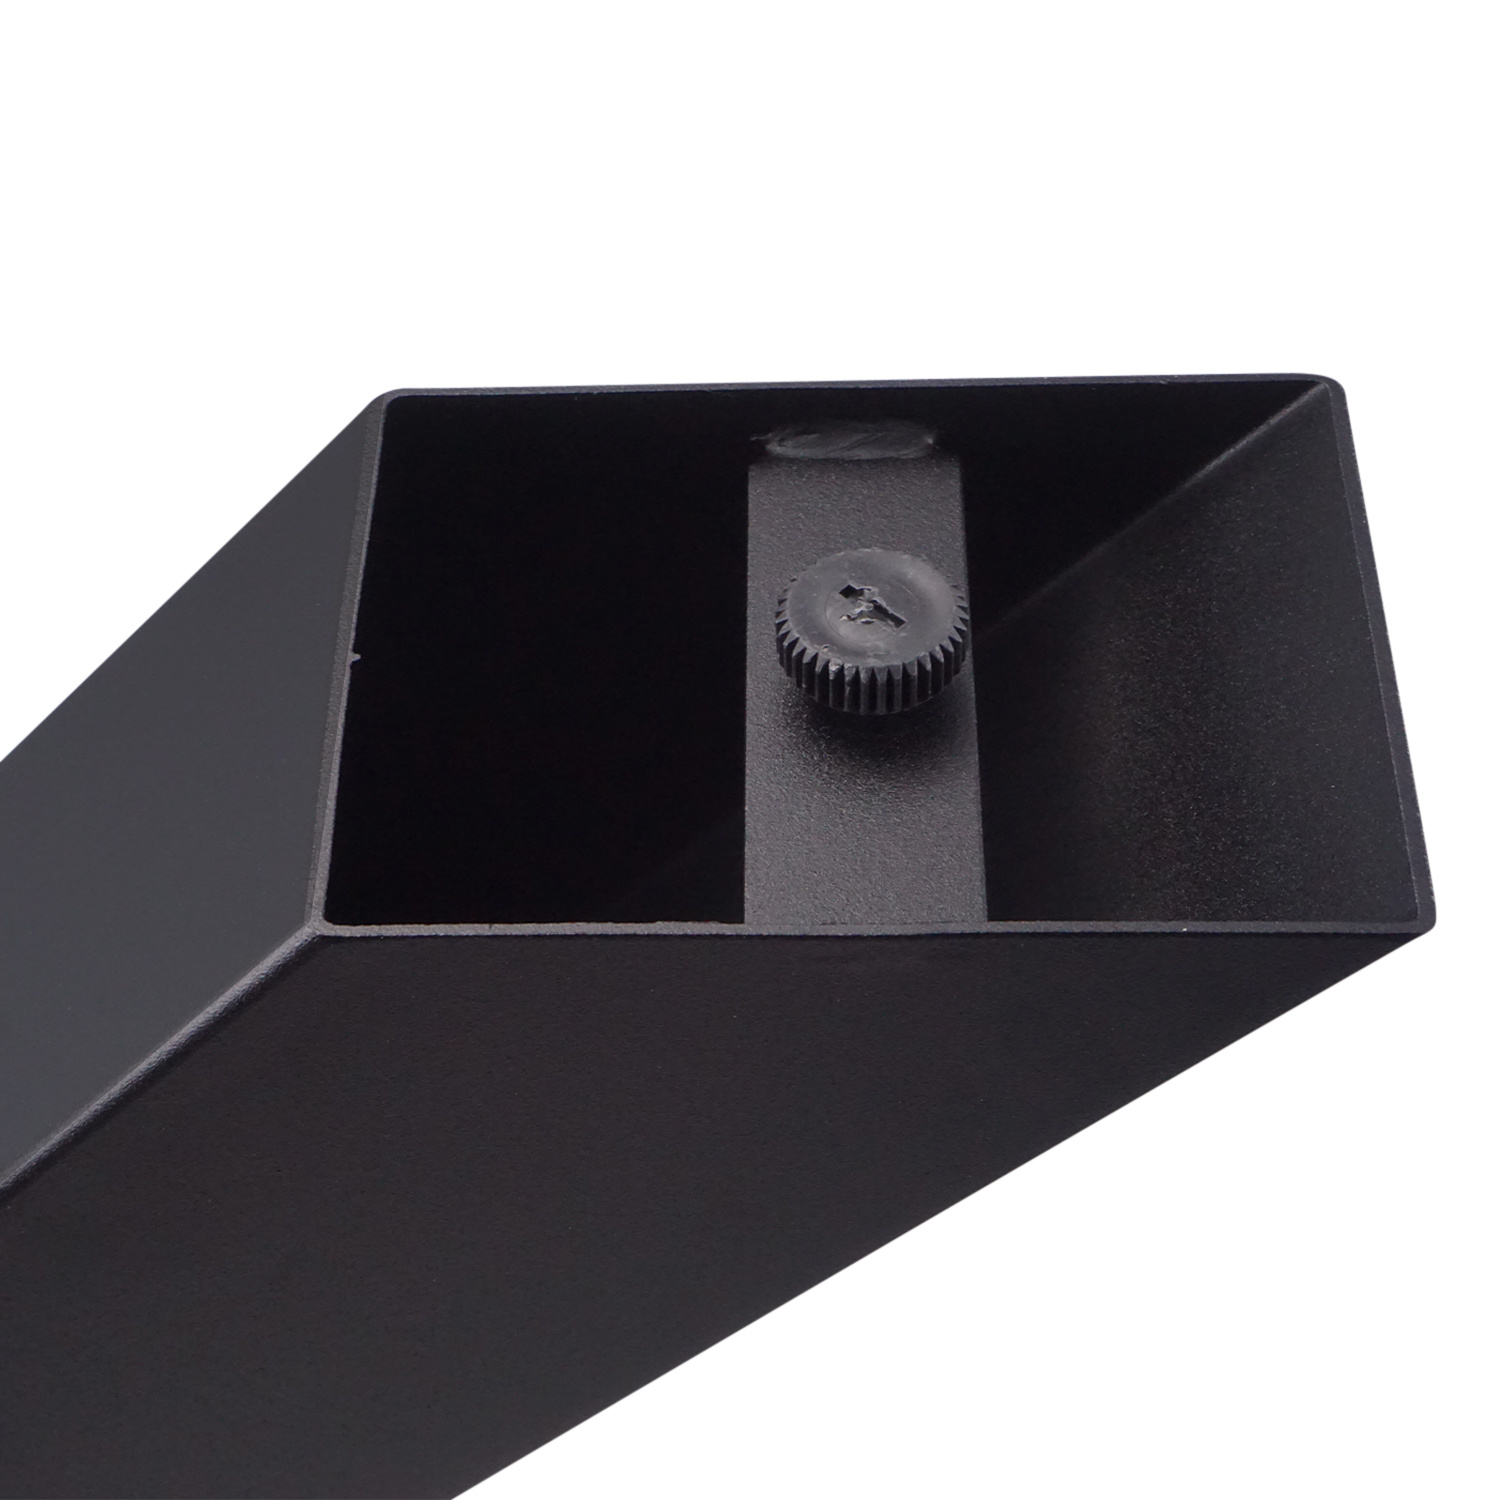  Tischbeine X Metall SET (2 Stück) - 10x10 cm - 78 cm breit - 72 cm hoch - X-form Tischkufen / Tischgestell beschichtet - Schwarz